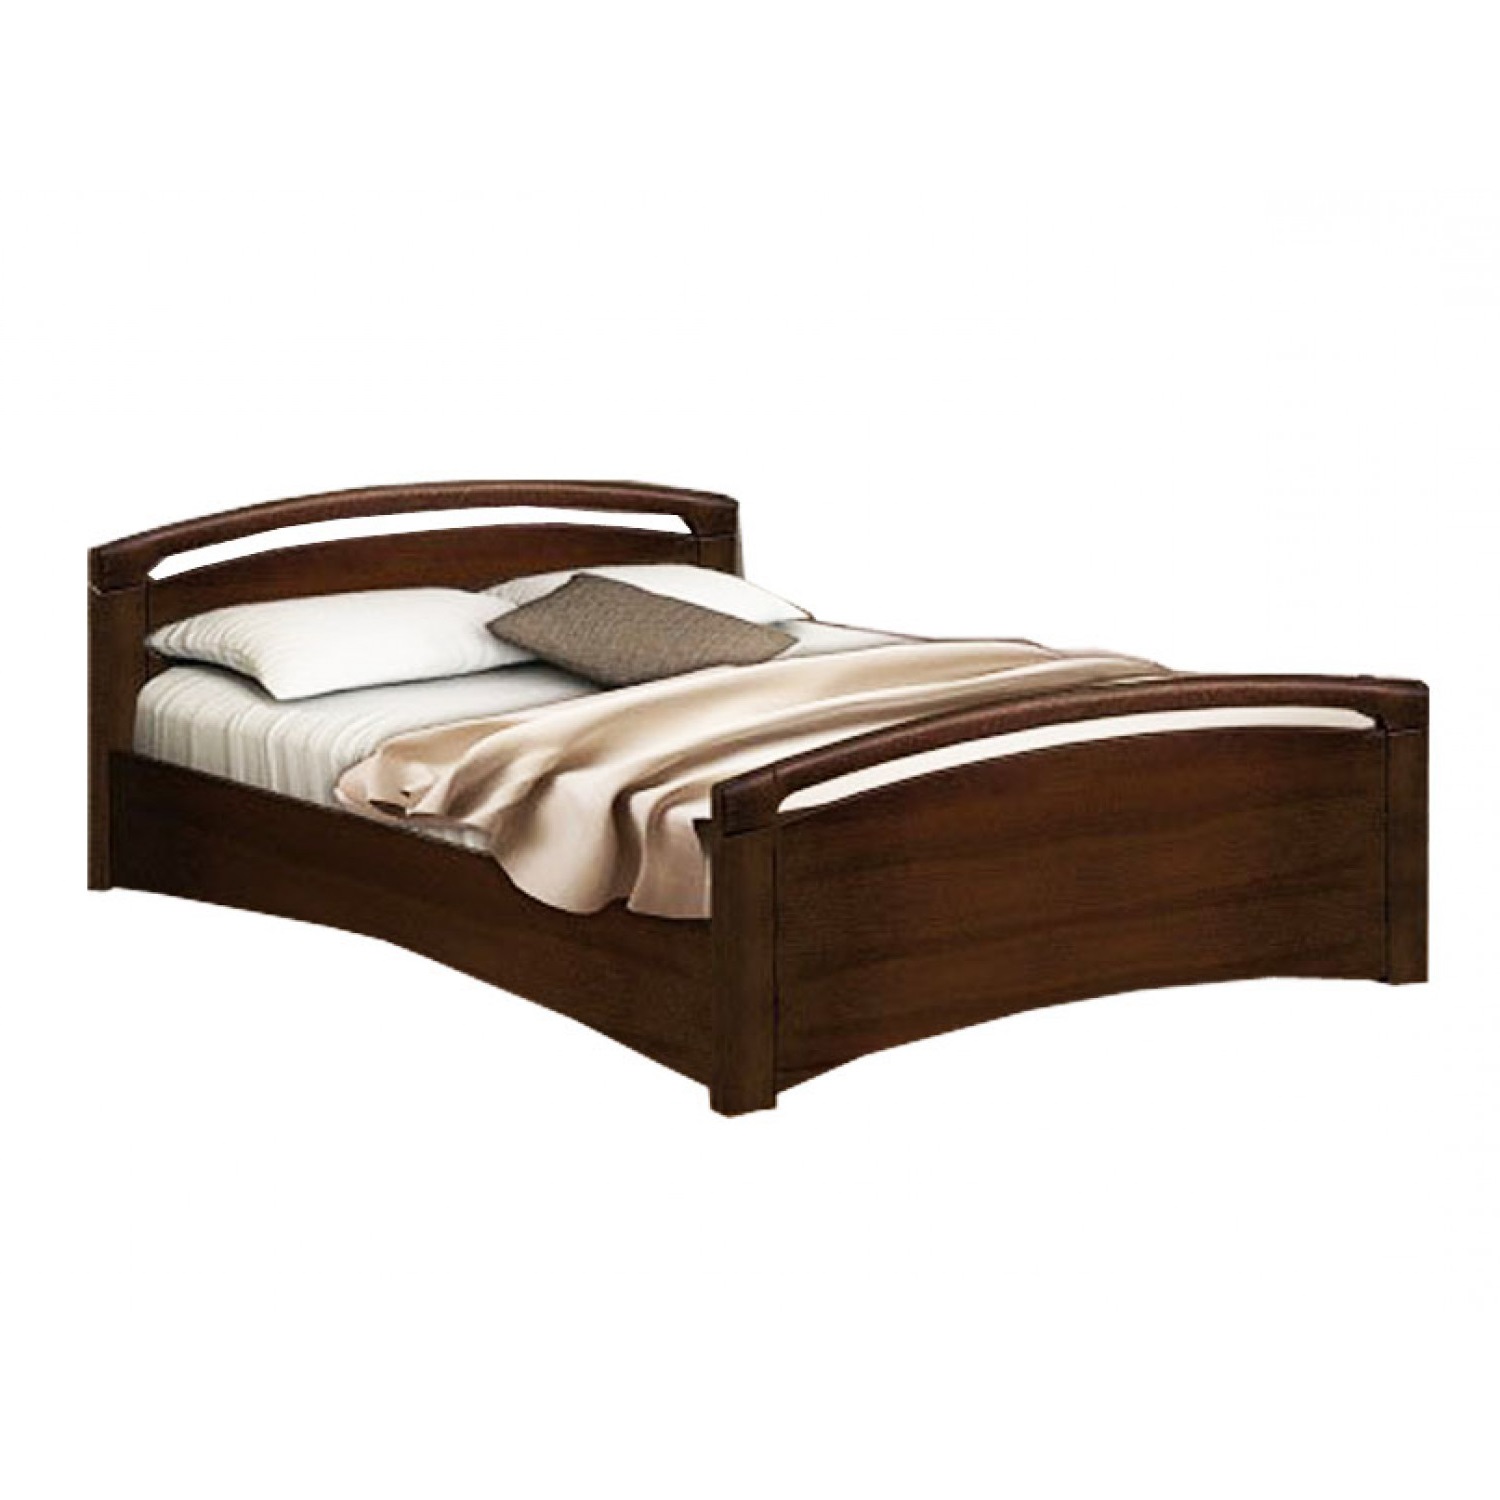 Купить деревянную кровать недорого. Кровать Бали из массива сосны. Кровать Бали венге 2.